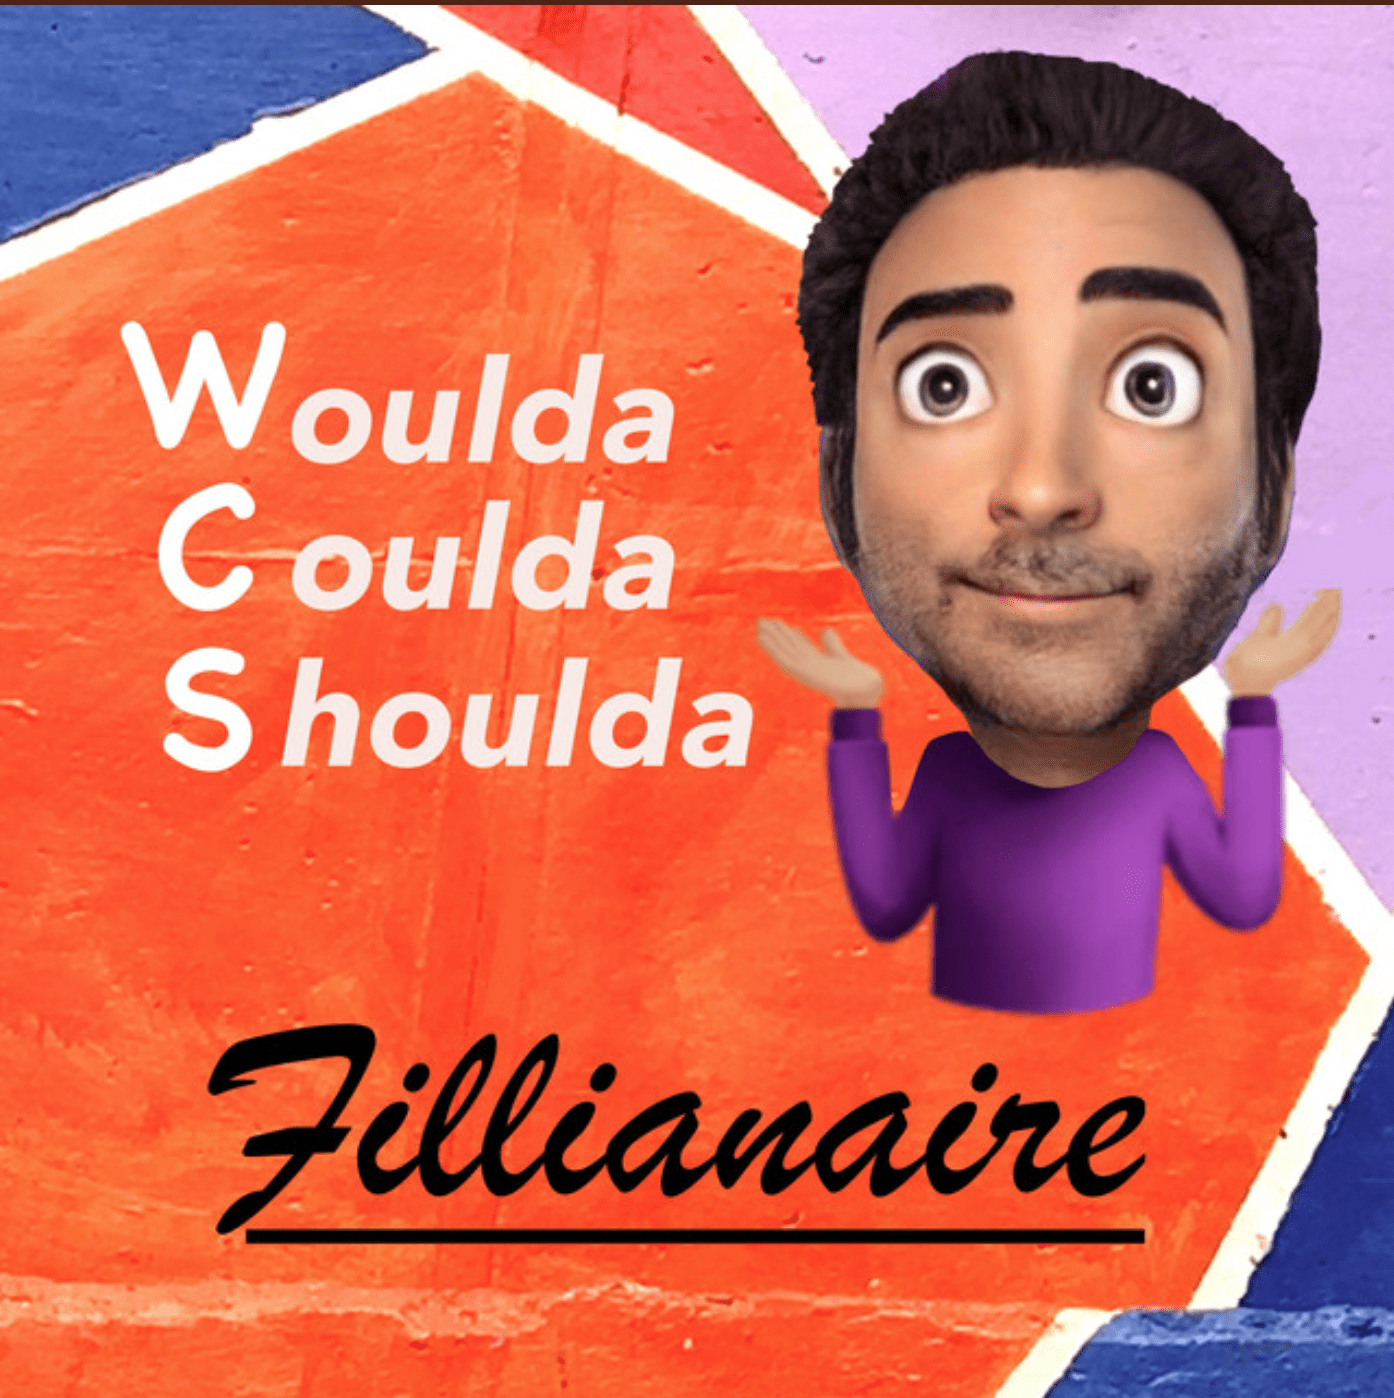 Woulda Coulda Shoulda (Original Single) by Fillianaire